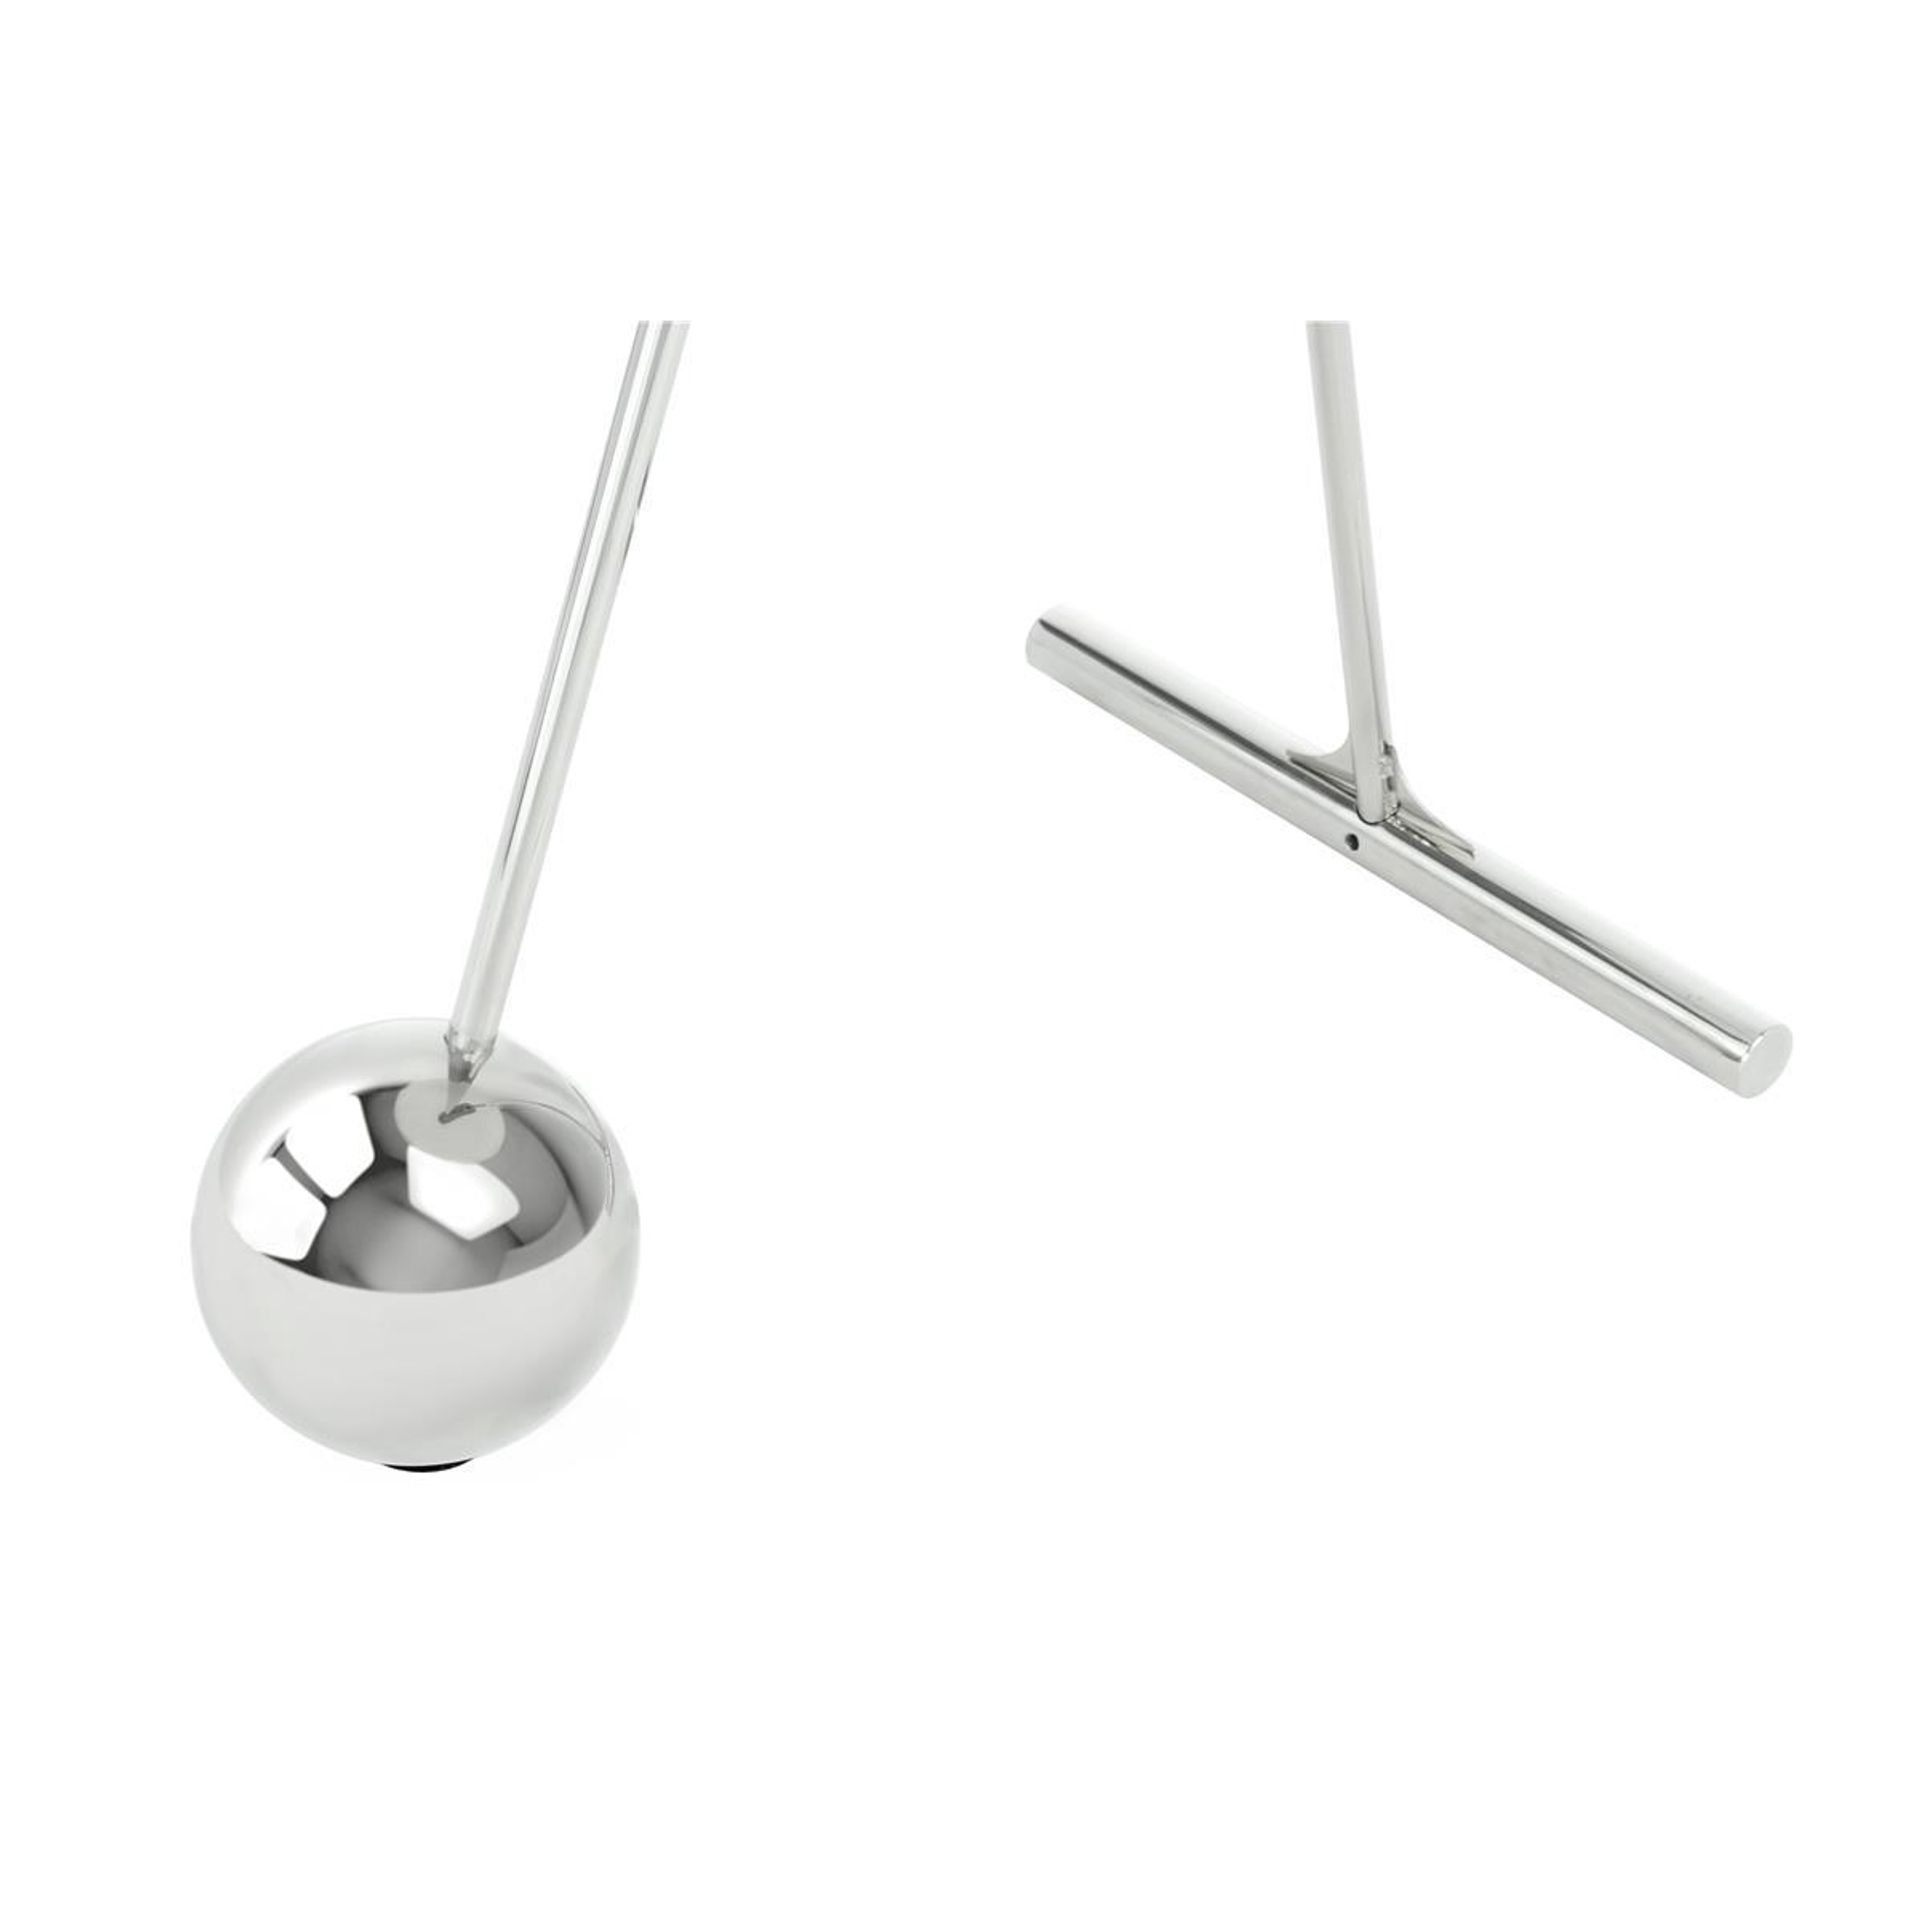 Beistelltisch Pendulum 525 Silber / Schwarz - 46 cm (L) x 46 cm (B) x 60 cm (H)